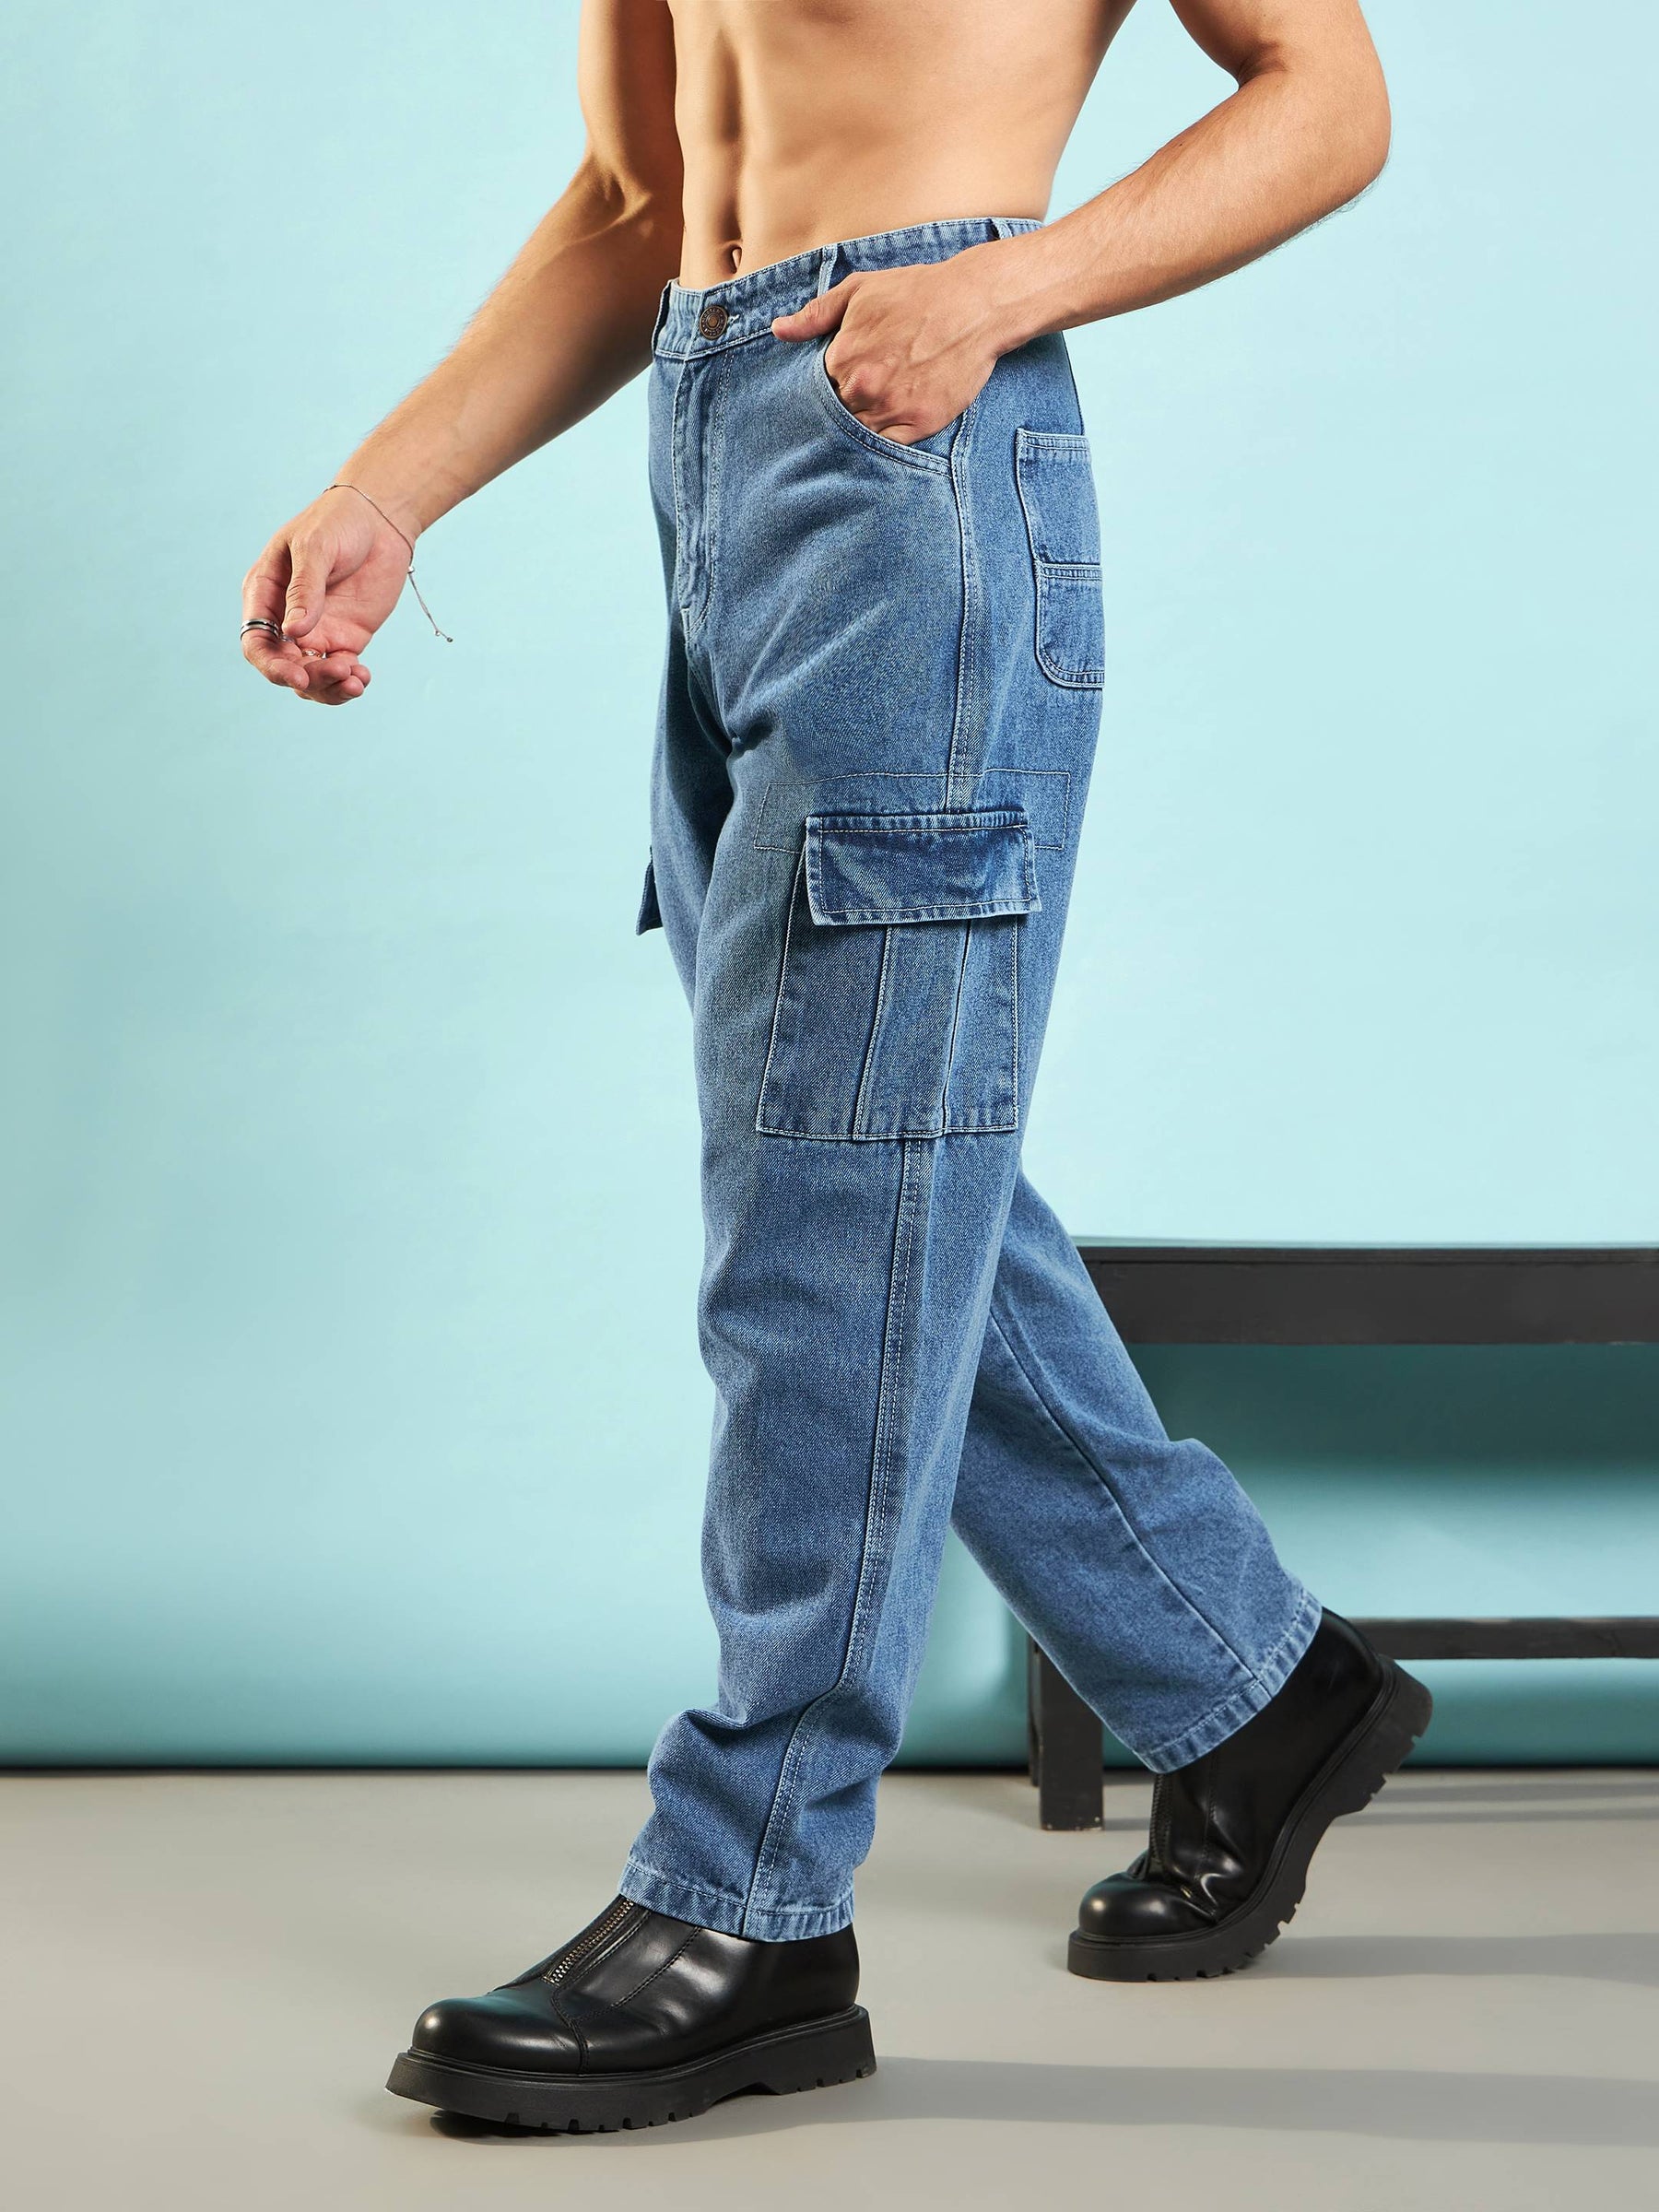 Blue Washed Cargo Pocket Loose Fit Jeans-MASCLN SASSAFRAS